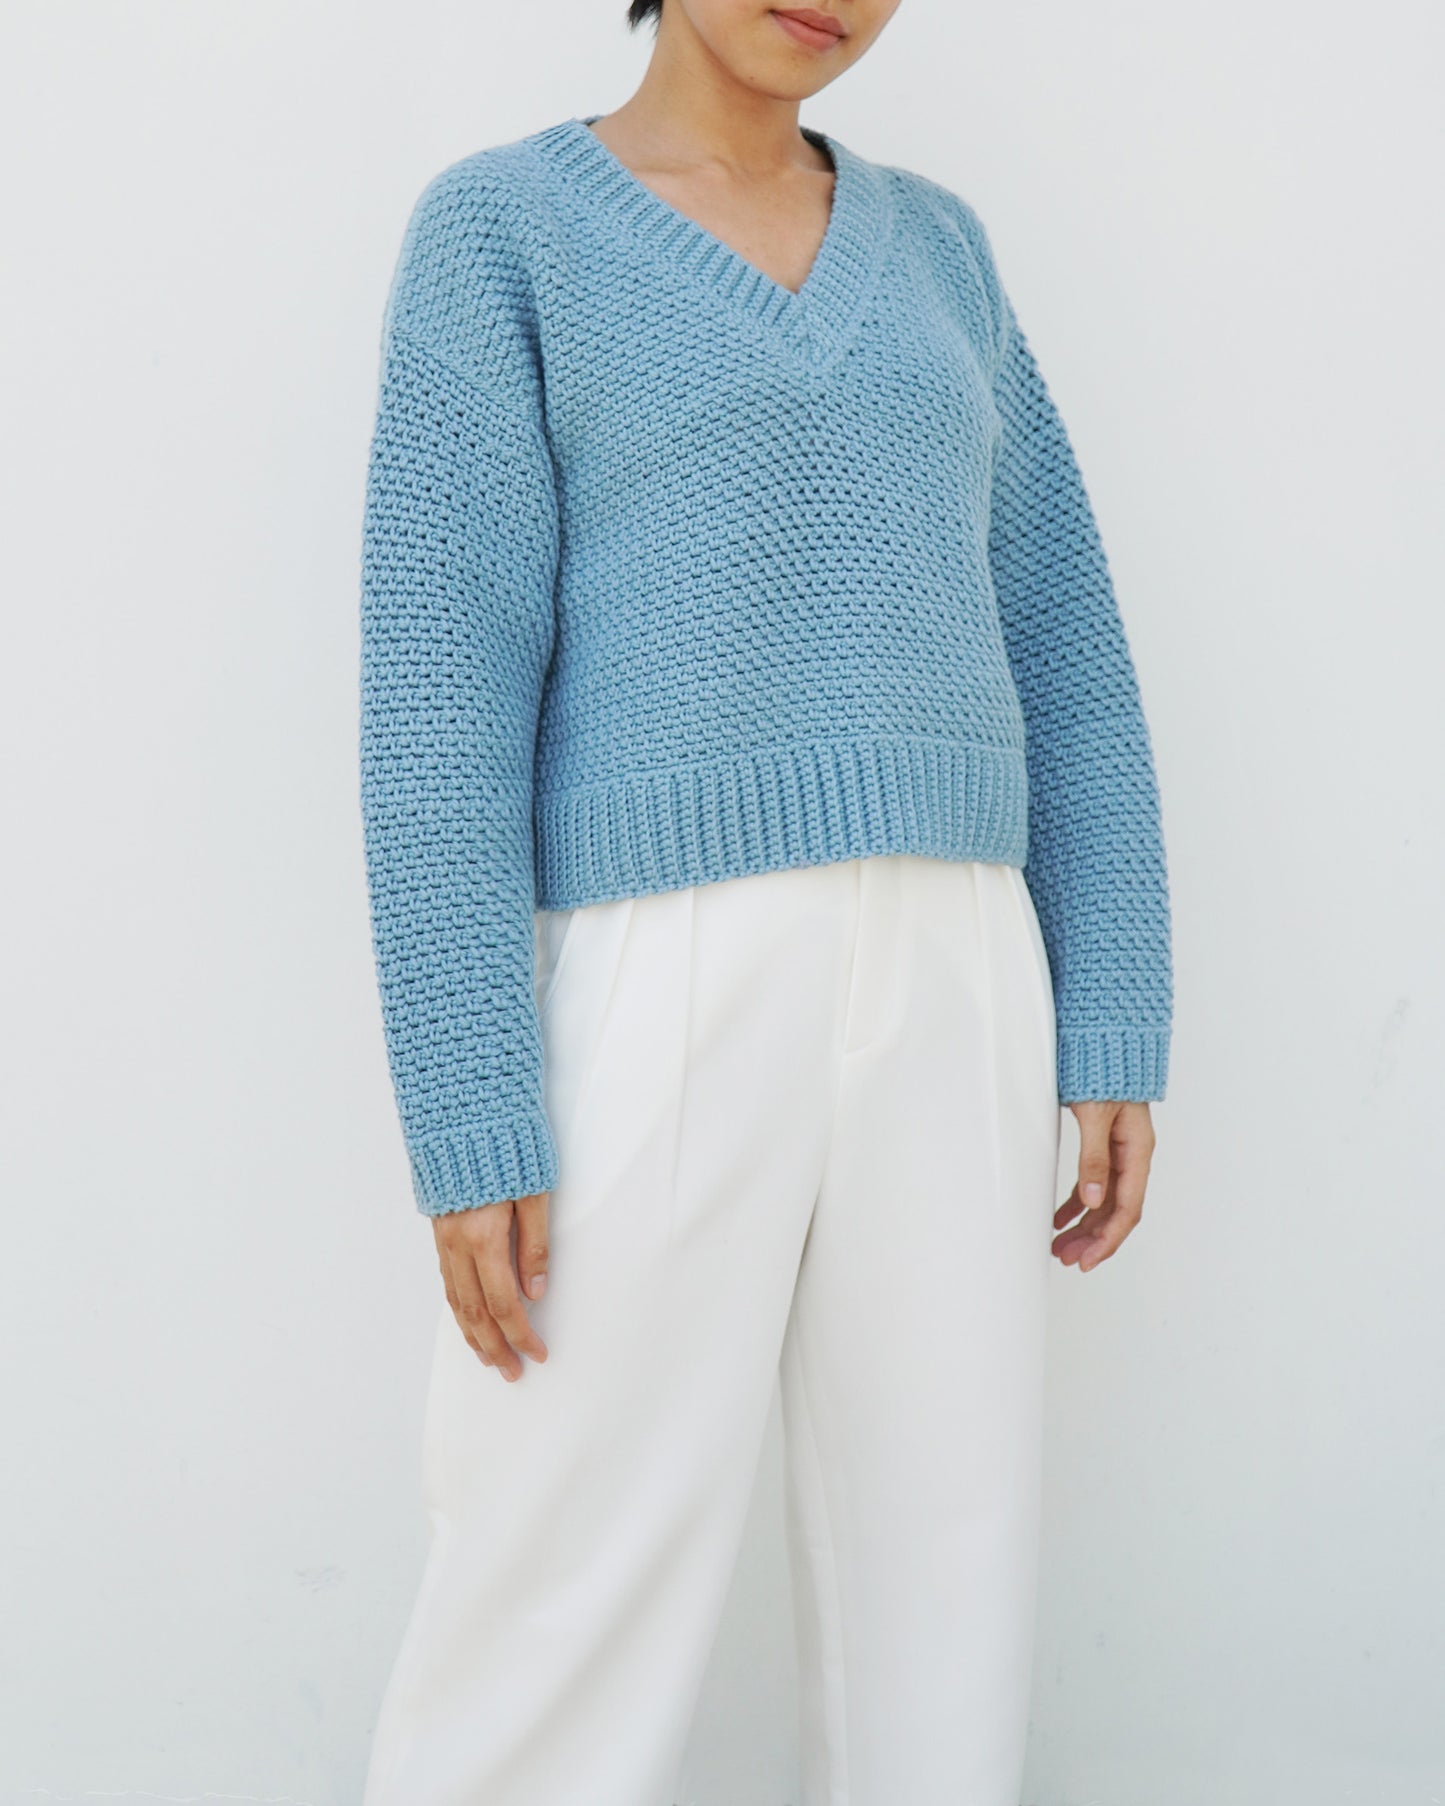 Sweater No.33 | Easy crochet sweater pattern